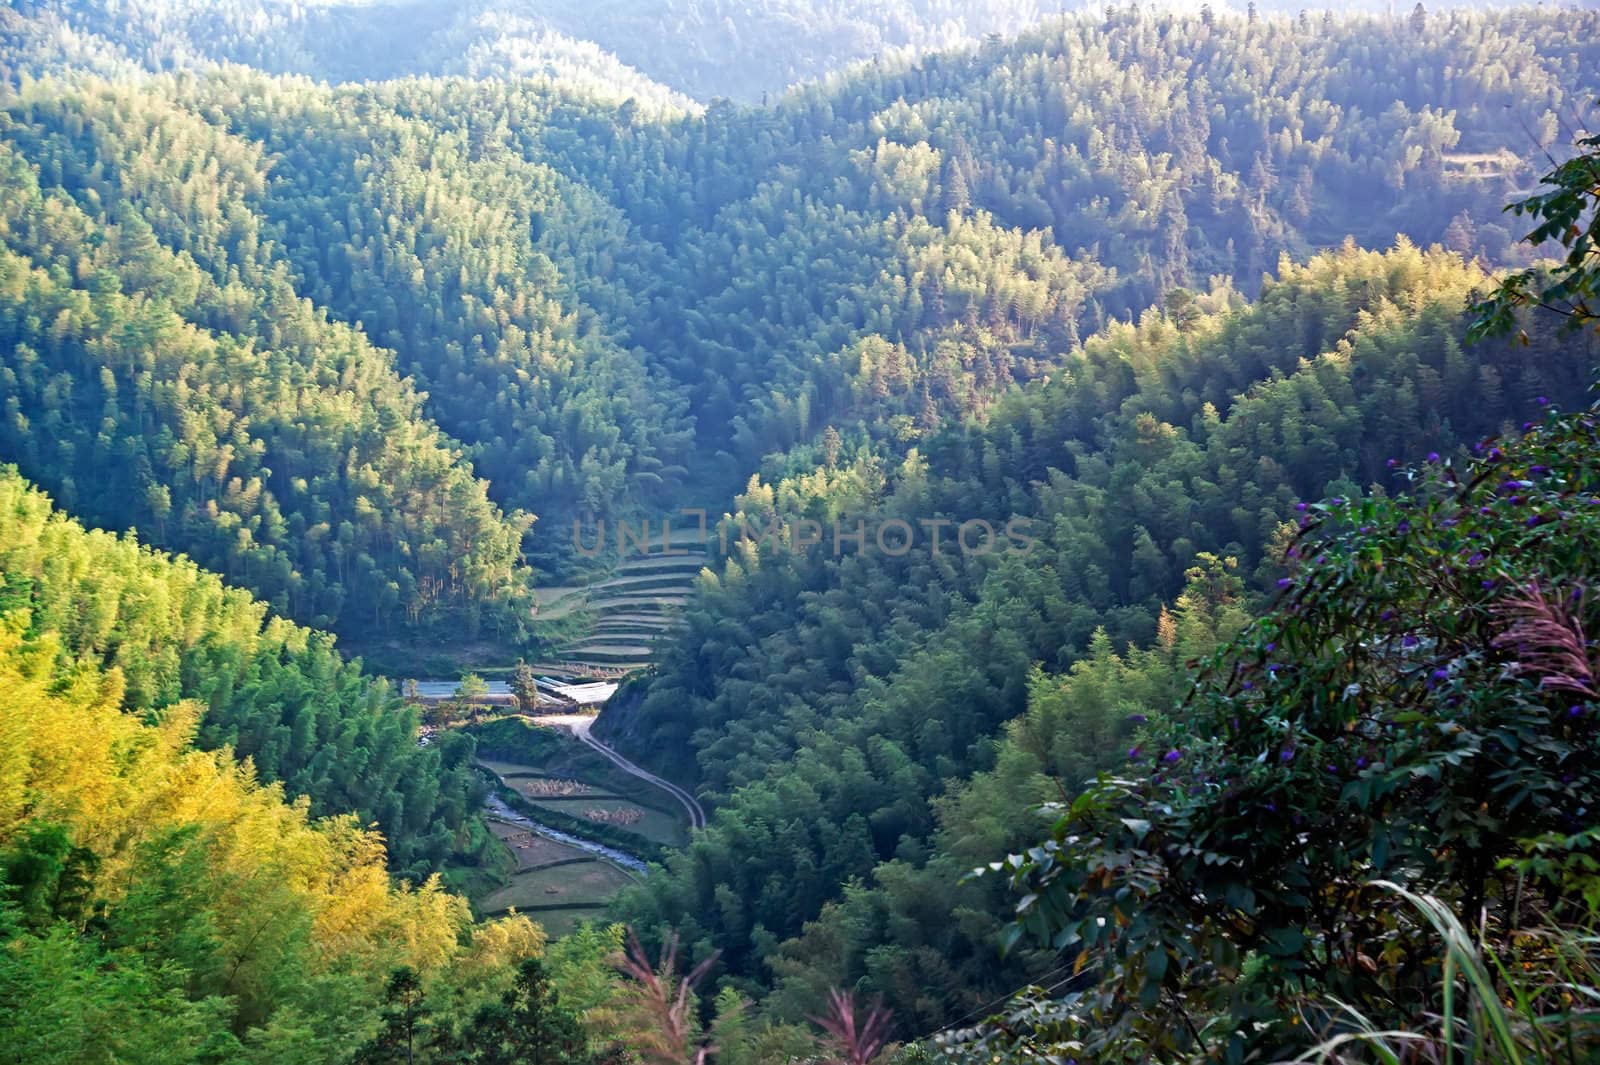 Guangxi beautiful bamboo landscape - taken in Ziyuan County, Guangxi, China by xfdly5